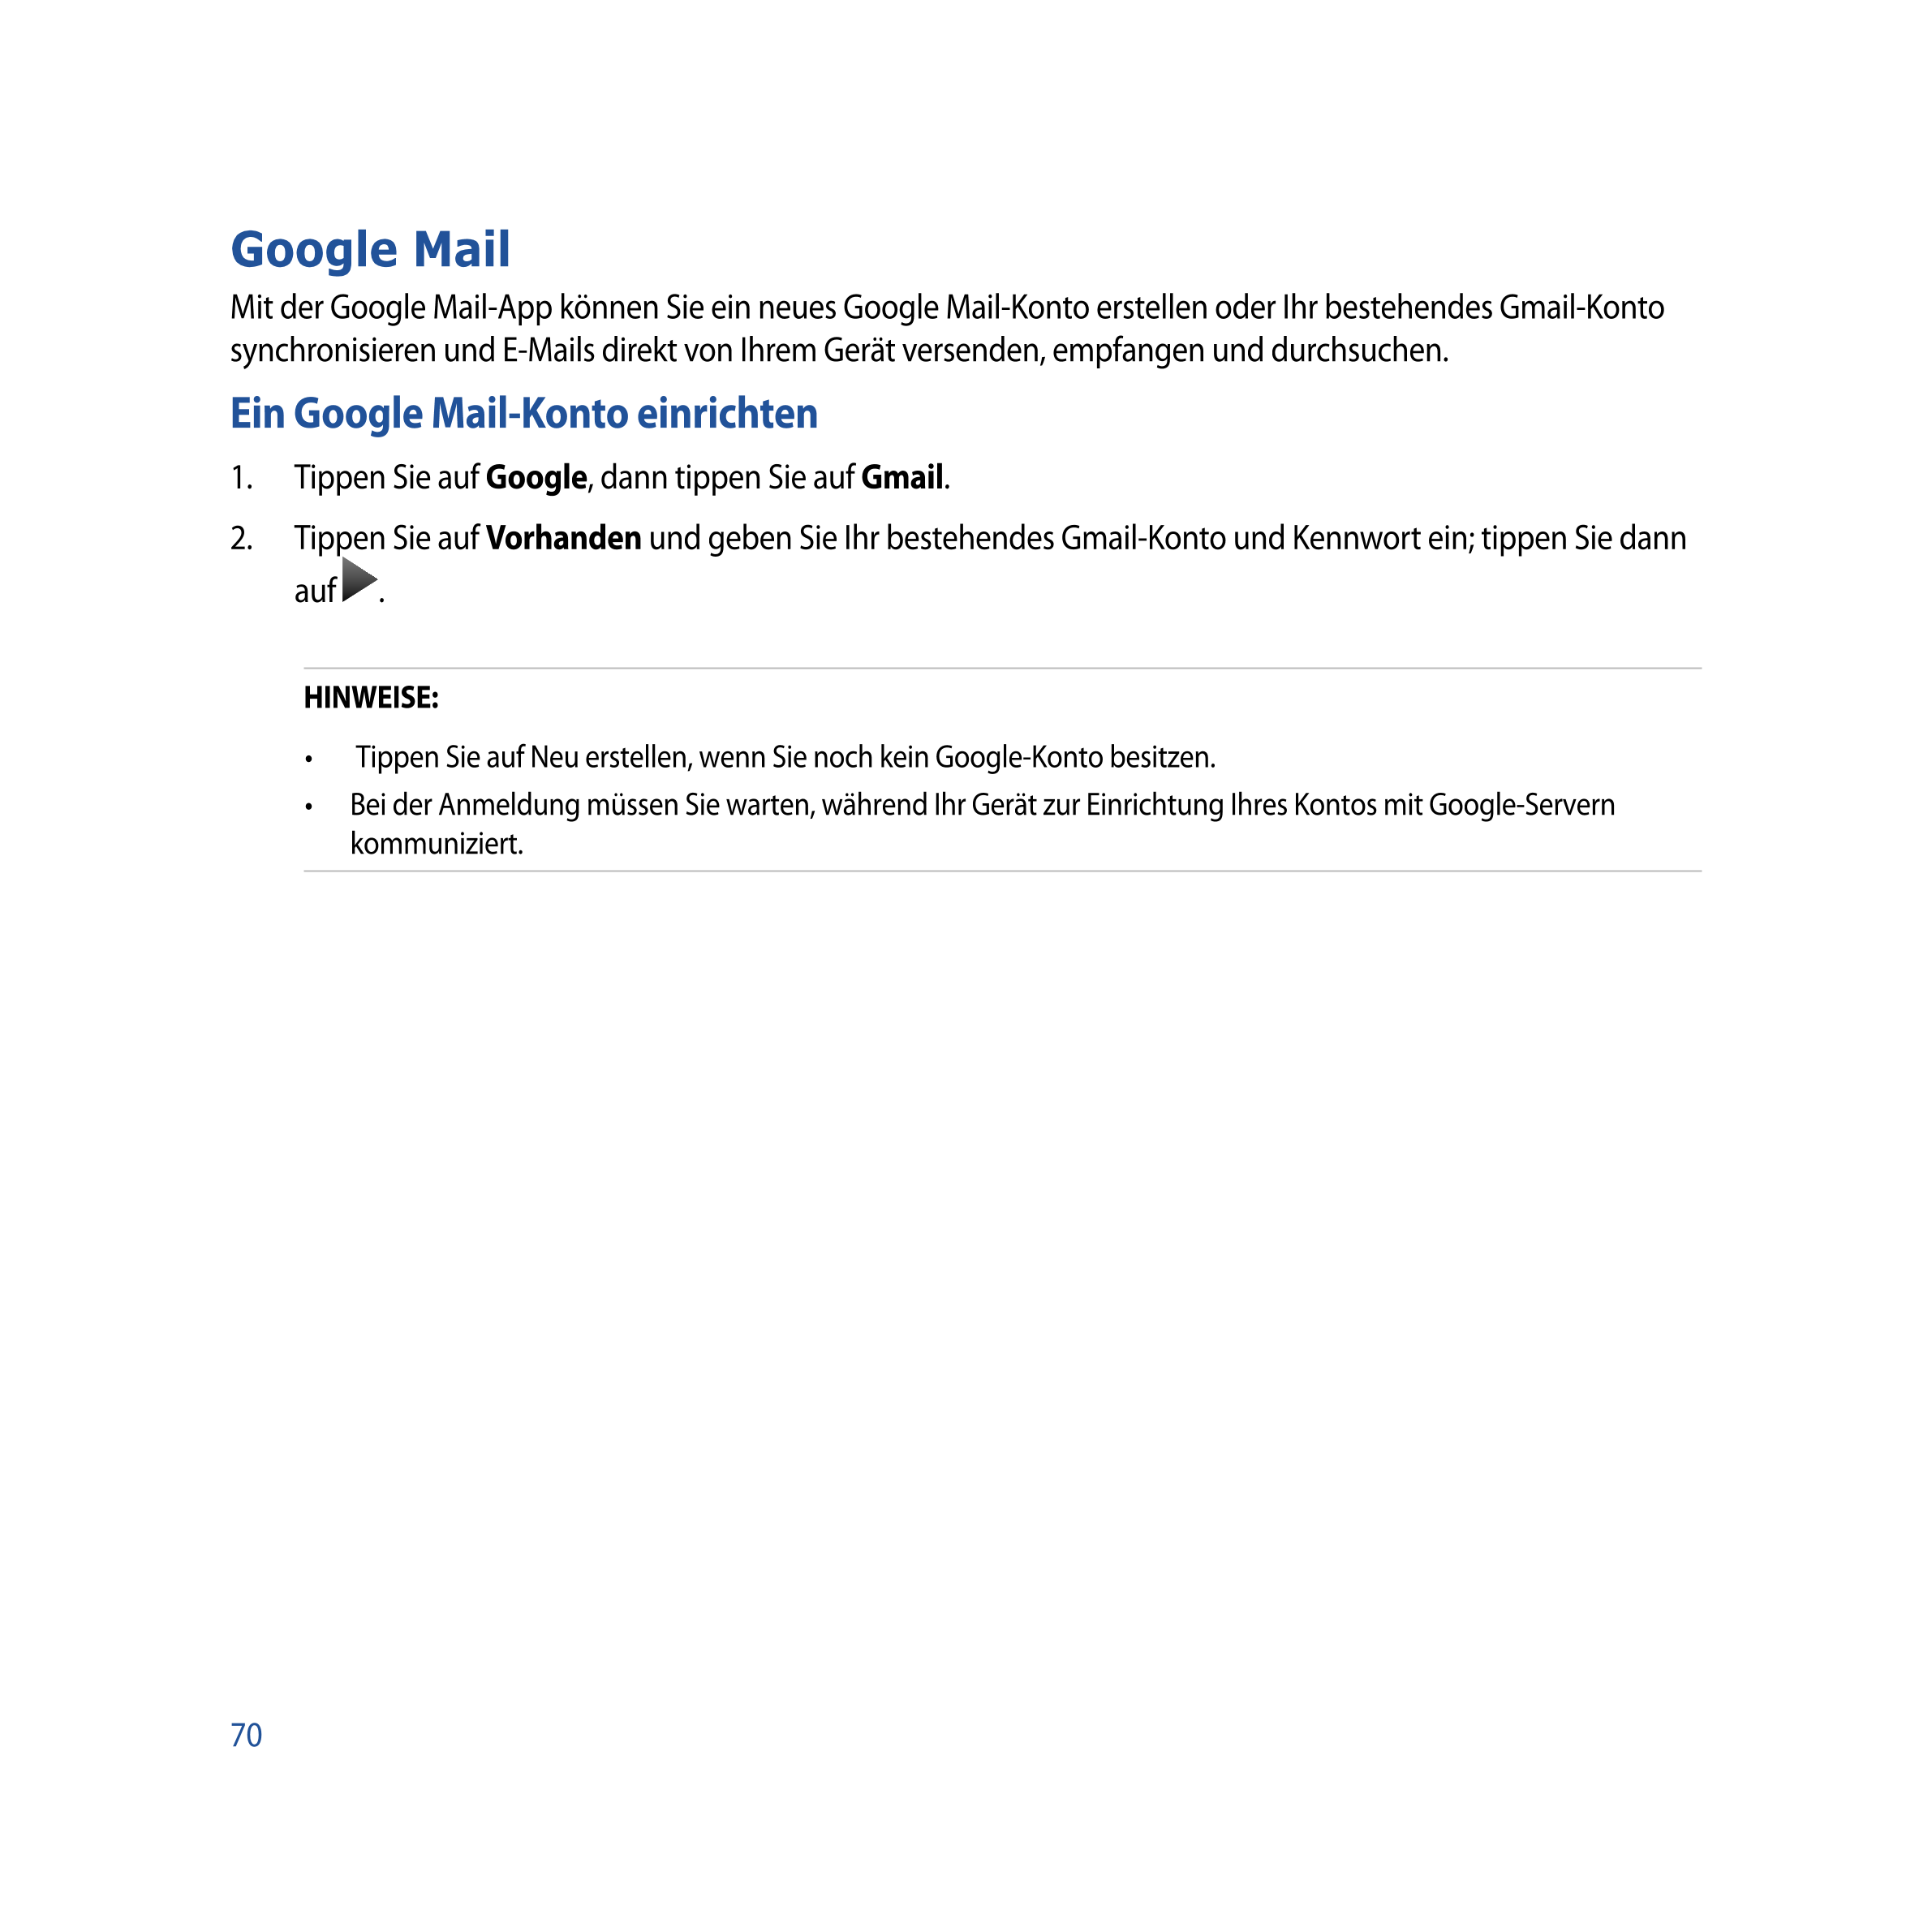 Google Mail
Mit der Google Mail-App können Sie ein neues Google Mail-Konto erstellen oder Ihr bestehendes Gmail-Konto 
synchroni